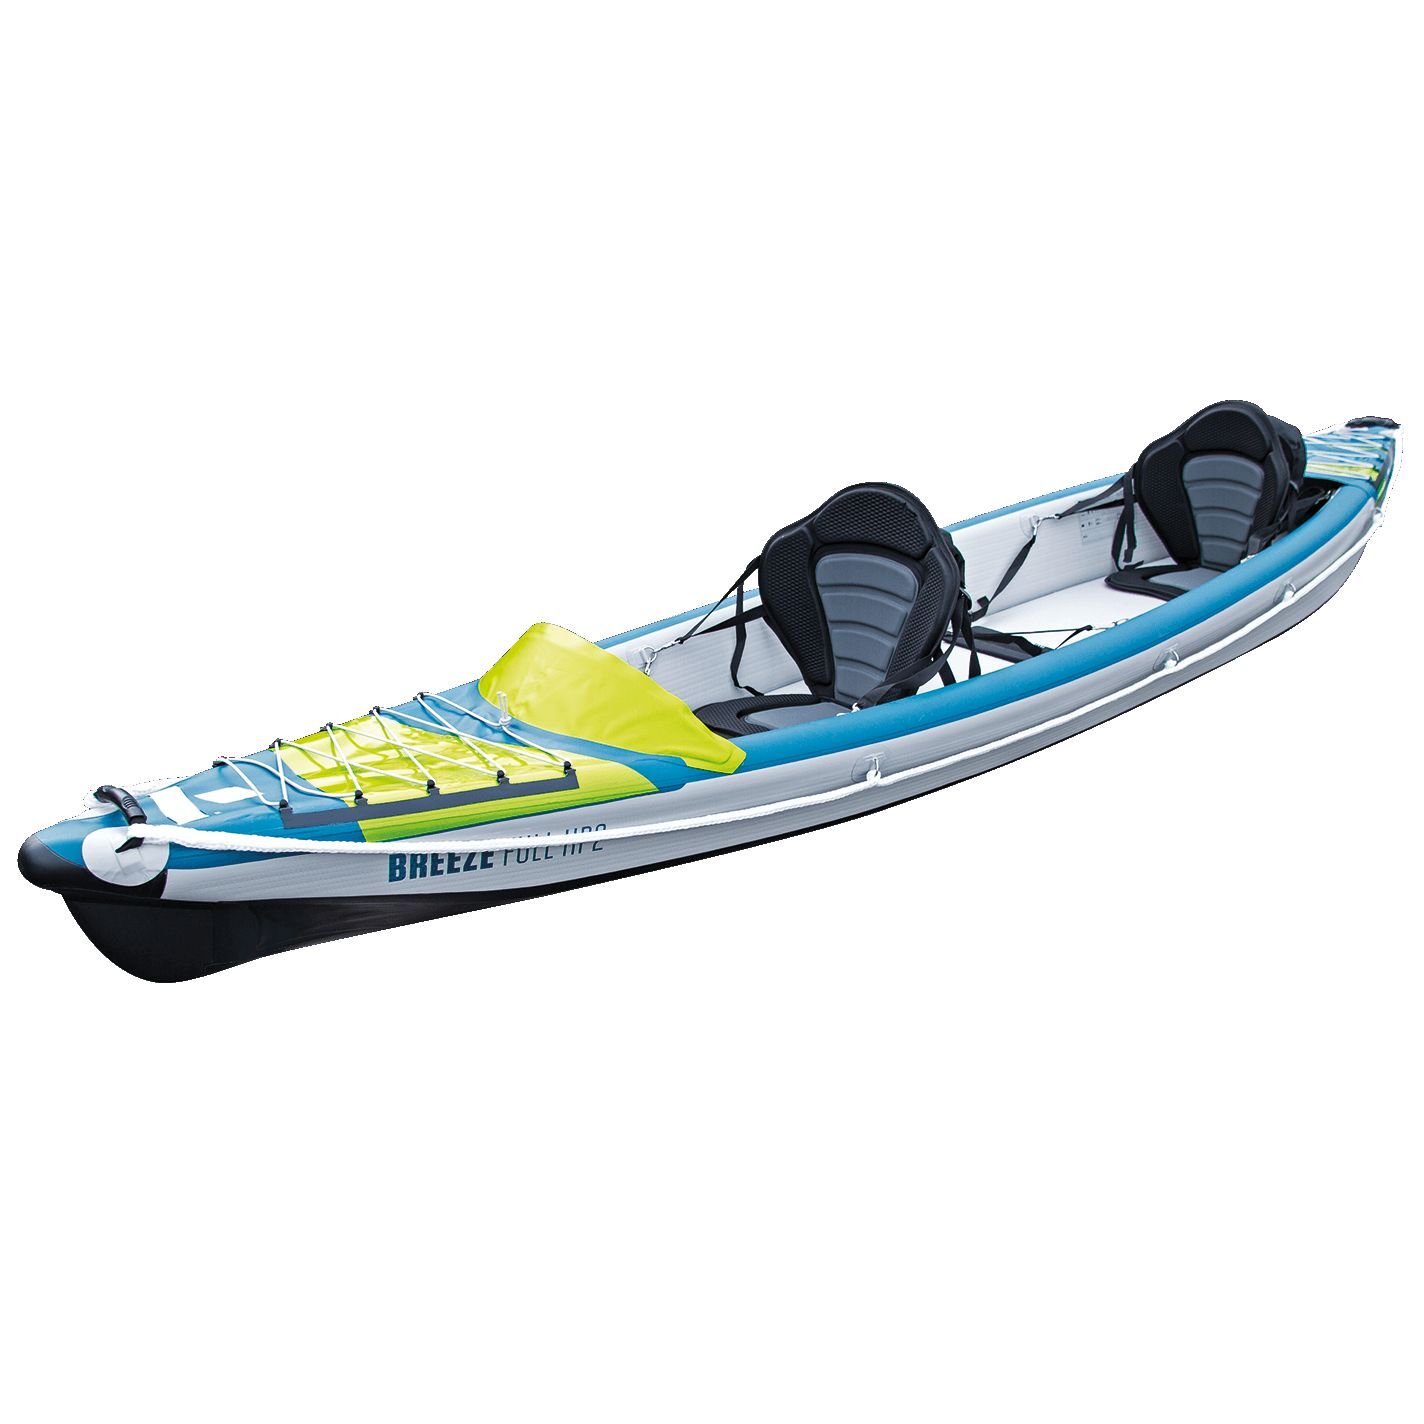 Tahe Outdoor Kayak Air Breeze Full Hp2 - Kayak gonfiabile